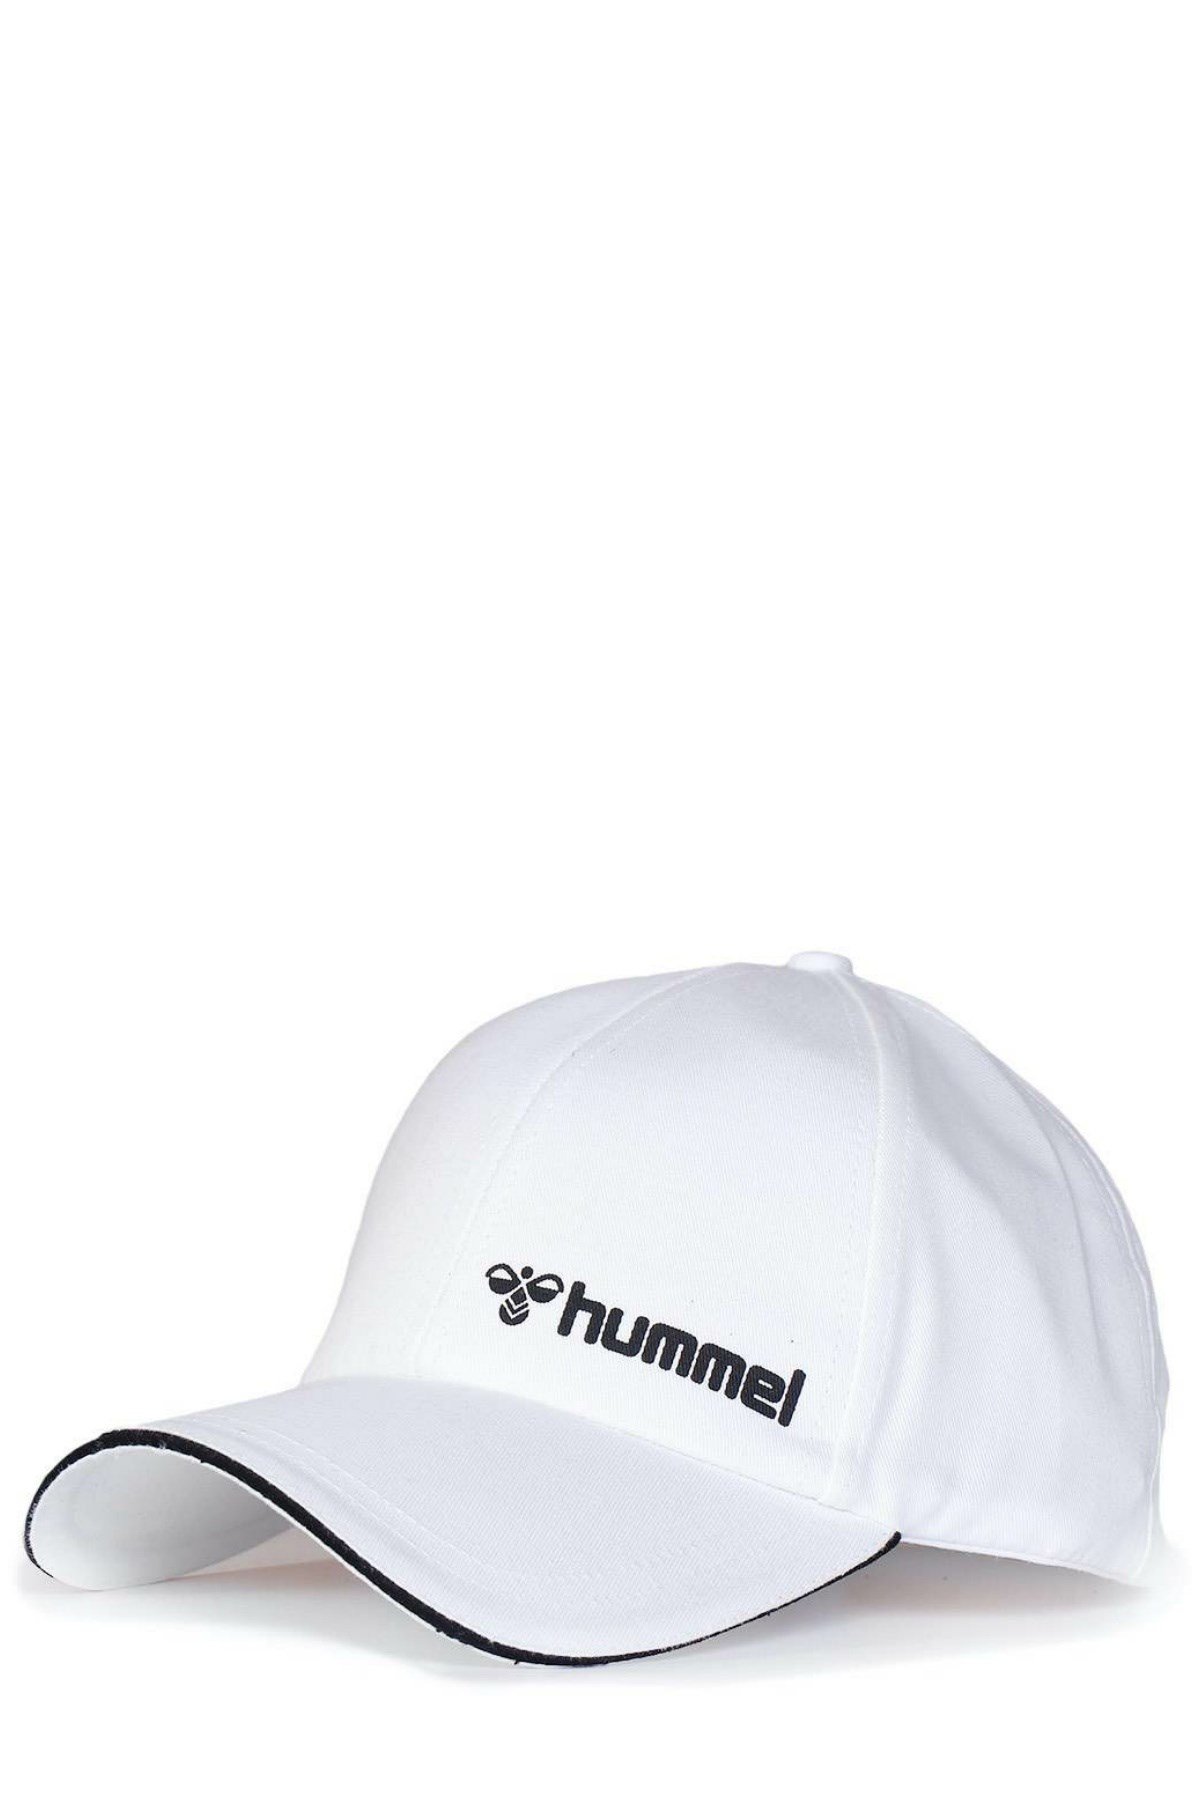 Hummel Hmljeffy Cap Kadın-Erkek Şapka 970172-9003 | Urban One